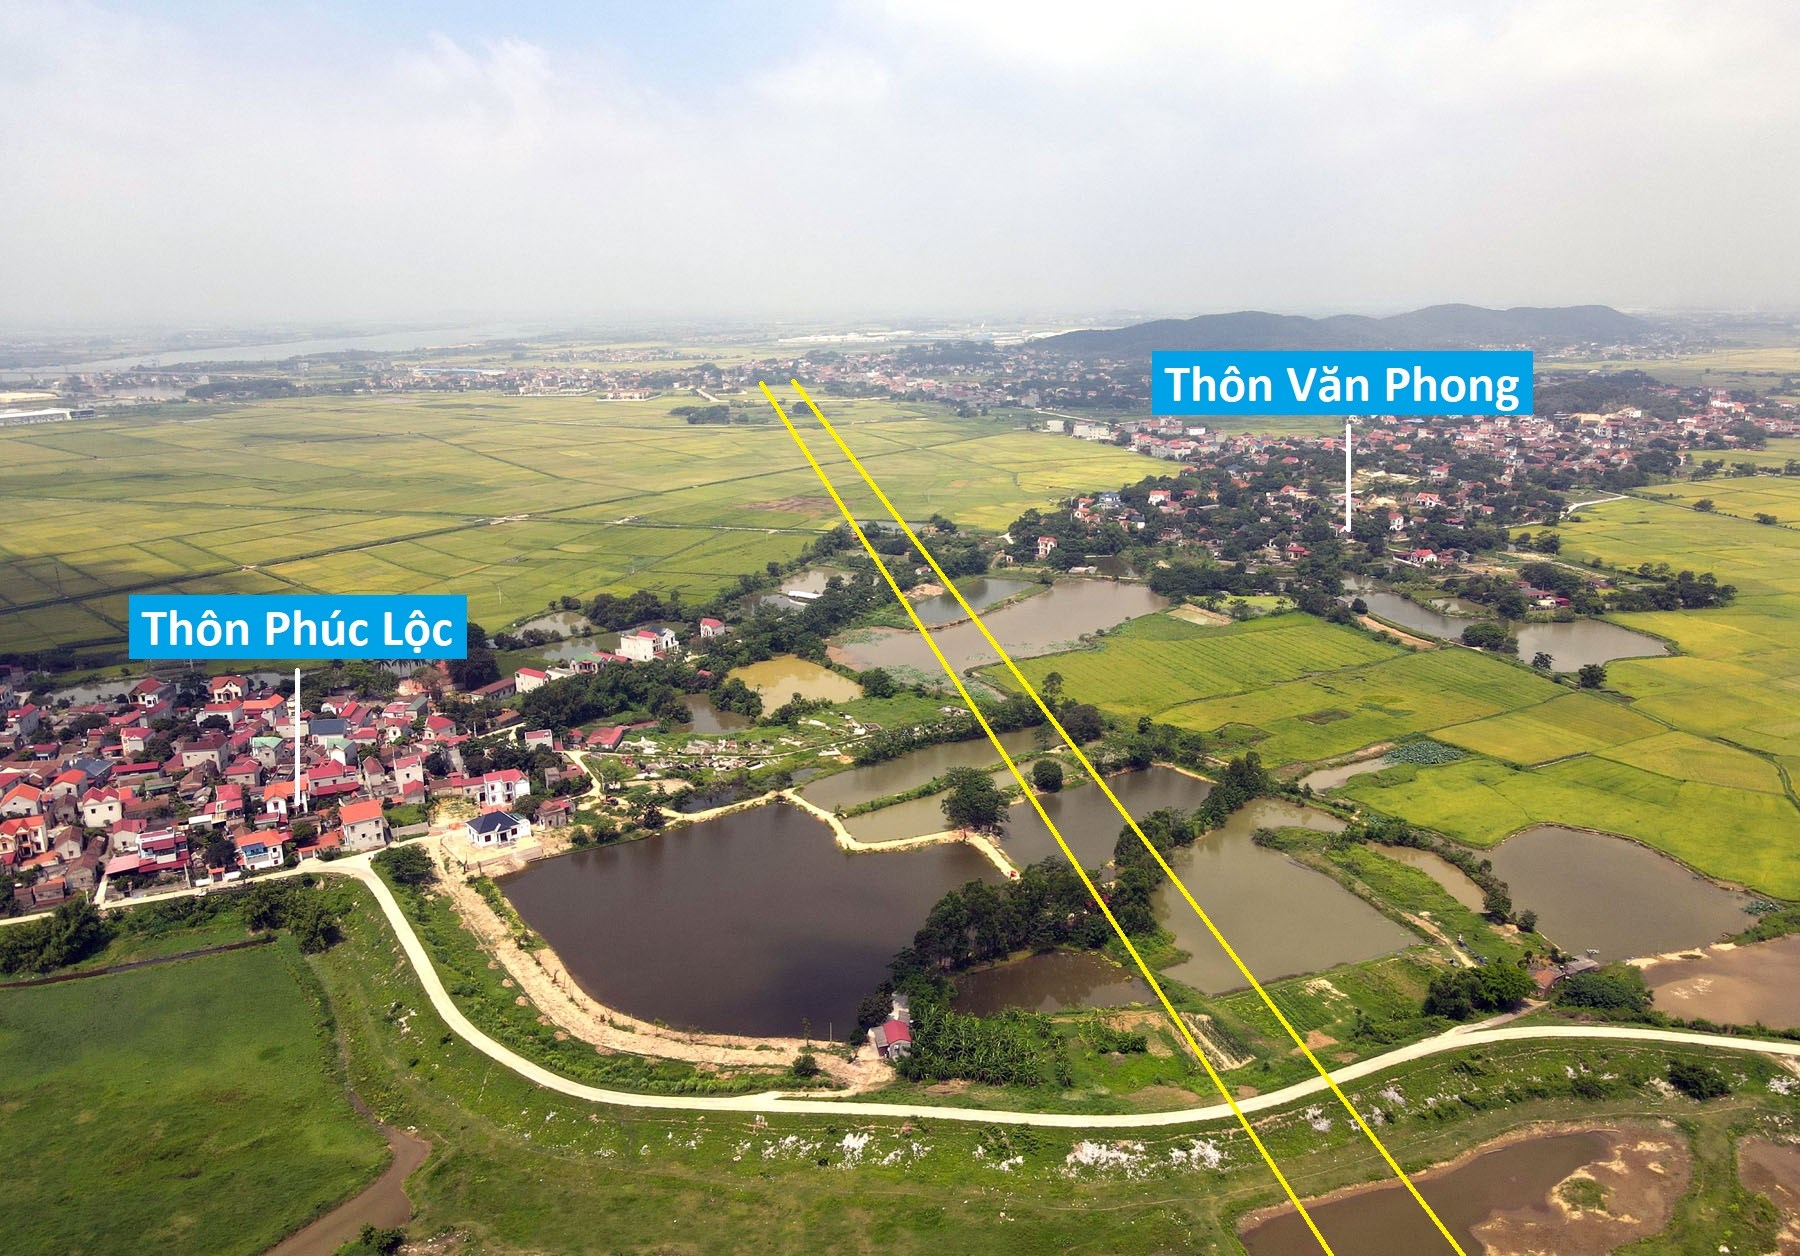 Toàn cảnh vị trí quy hoạch xây cầu vượt sông Cầu trên tuyến cao tốc Nội Bài - Hạ Long nối Bắc Ninh - Bắc Giang